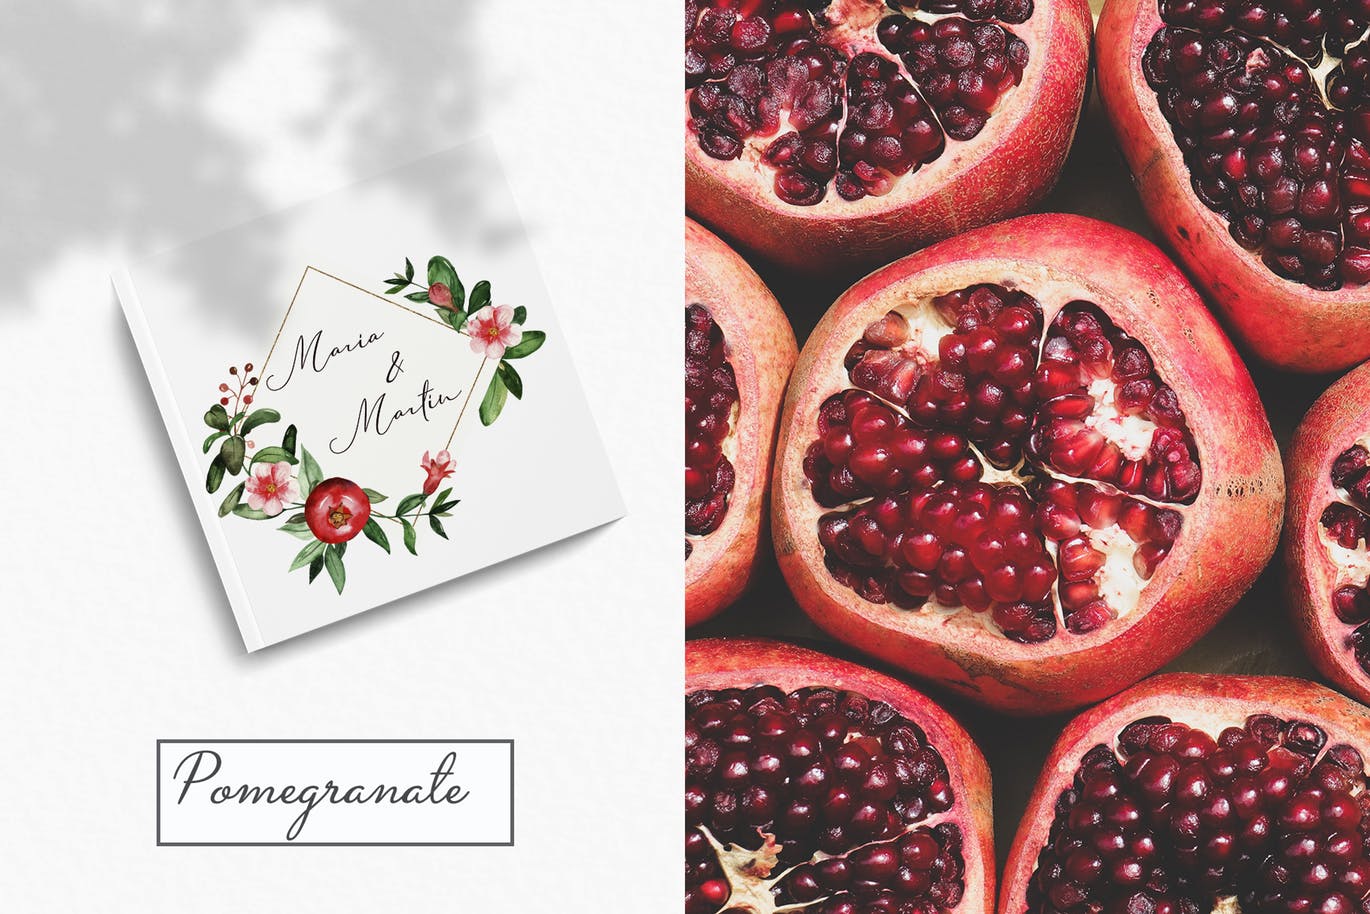 水彩石榴剪贴画/花框/花环素材中国精选设计素材 Watercolor pomegranate. Clipart, frames, wreaths插图(9)